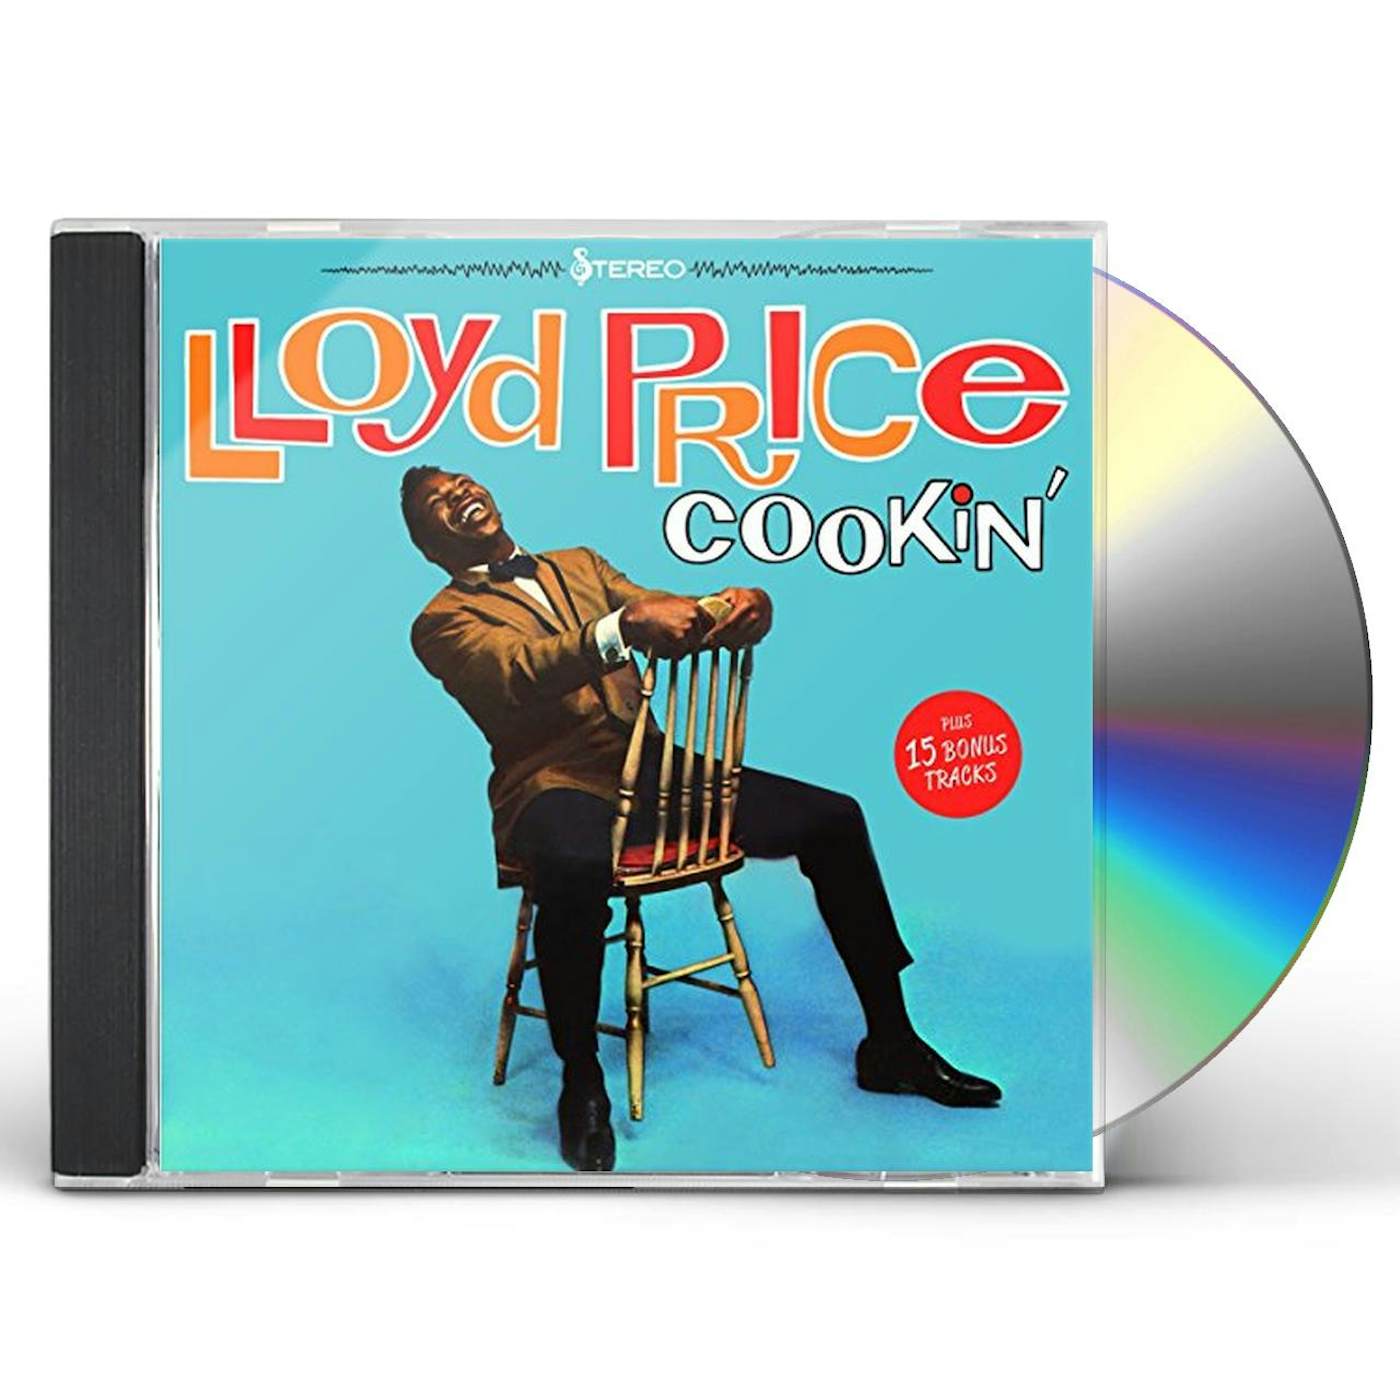 Lloyd Price COOKIN + 15 BONUS TRACKS CD